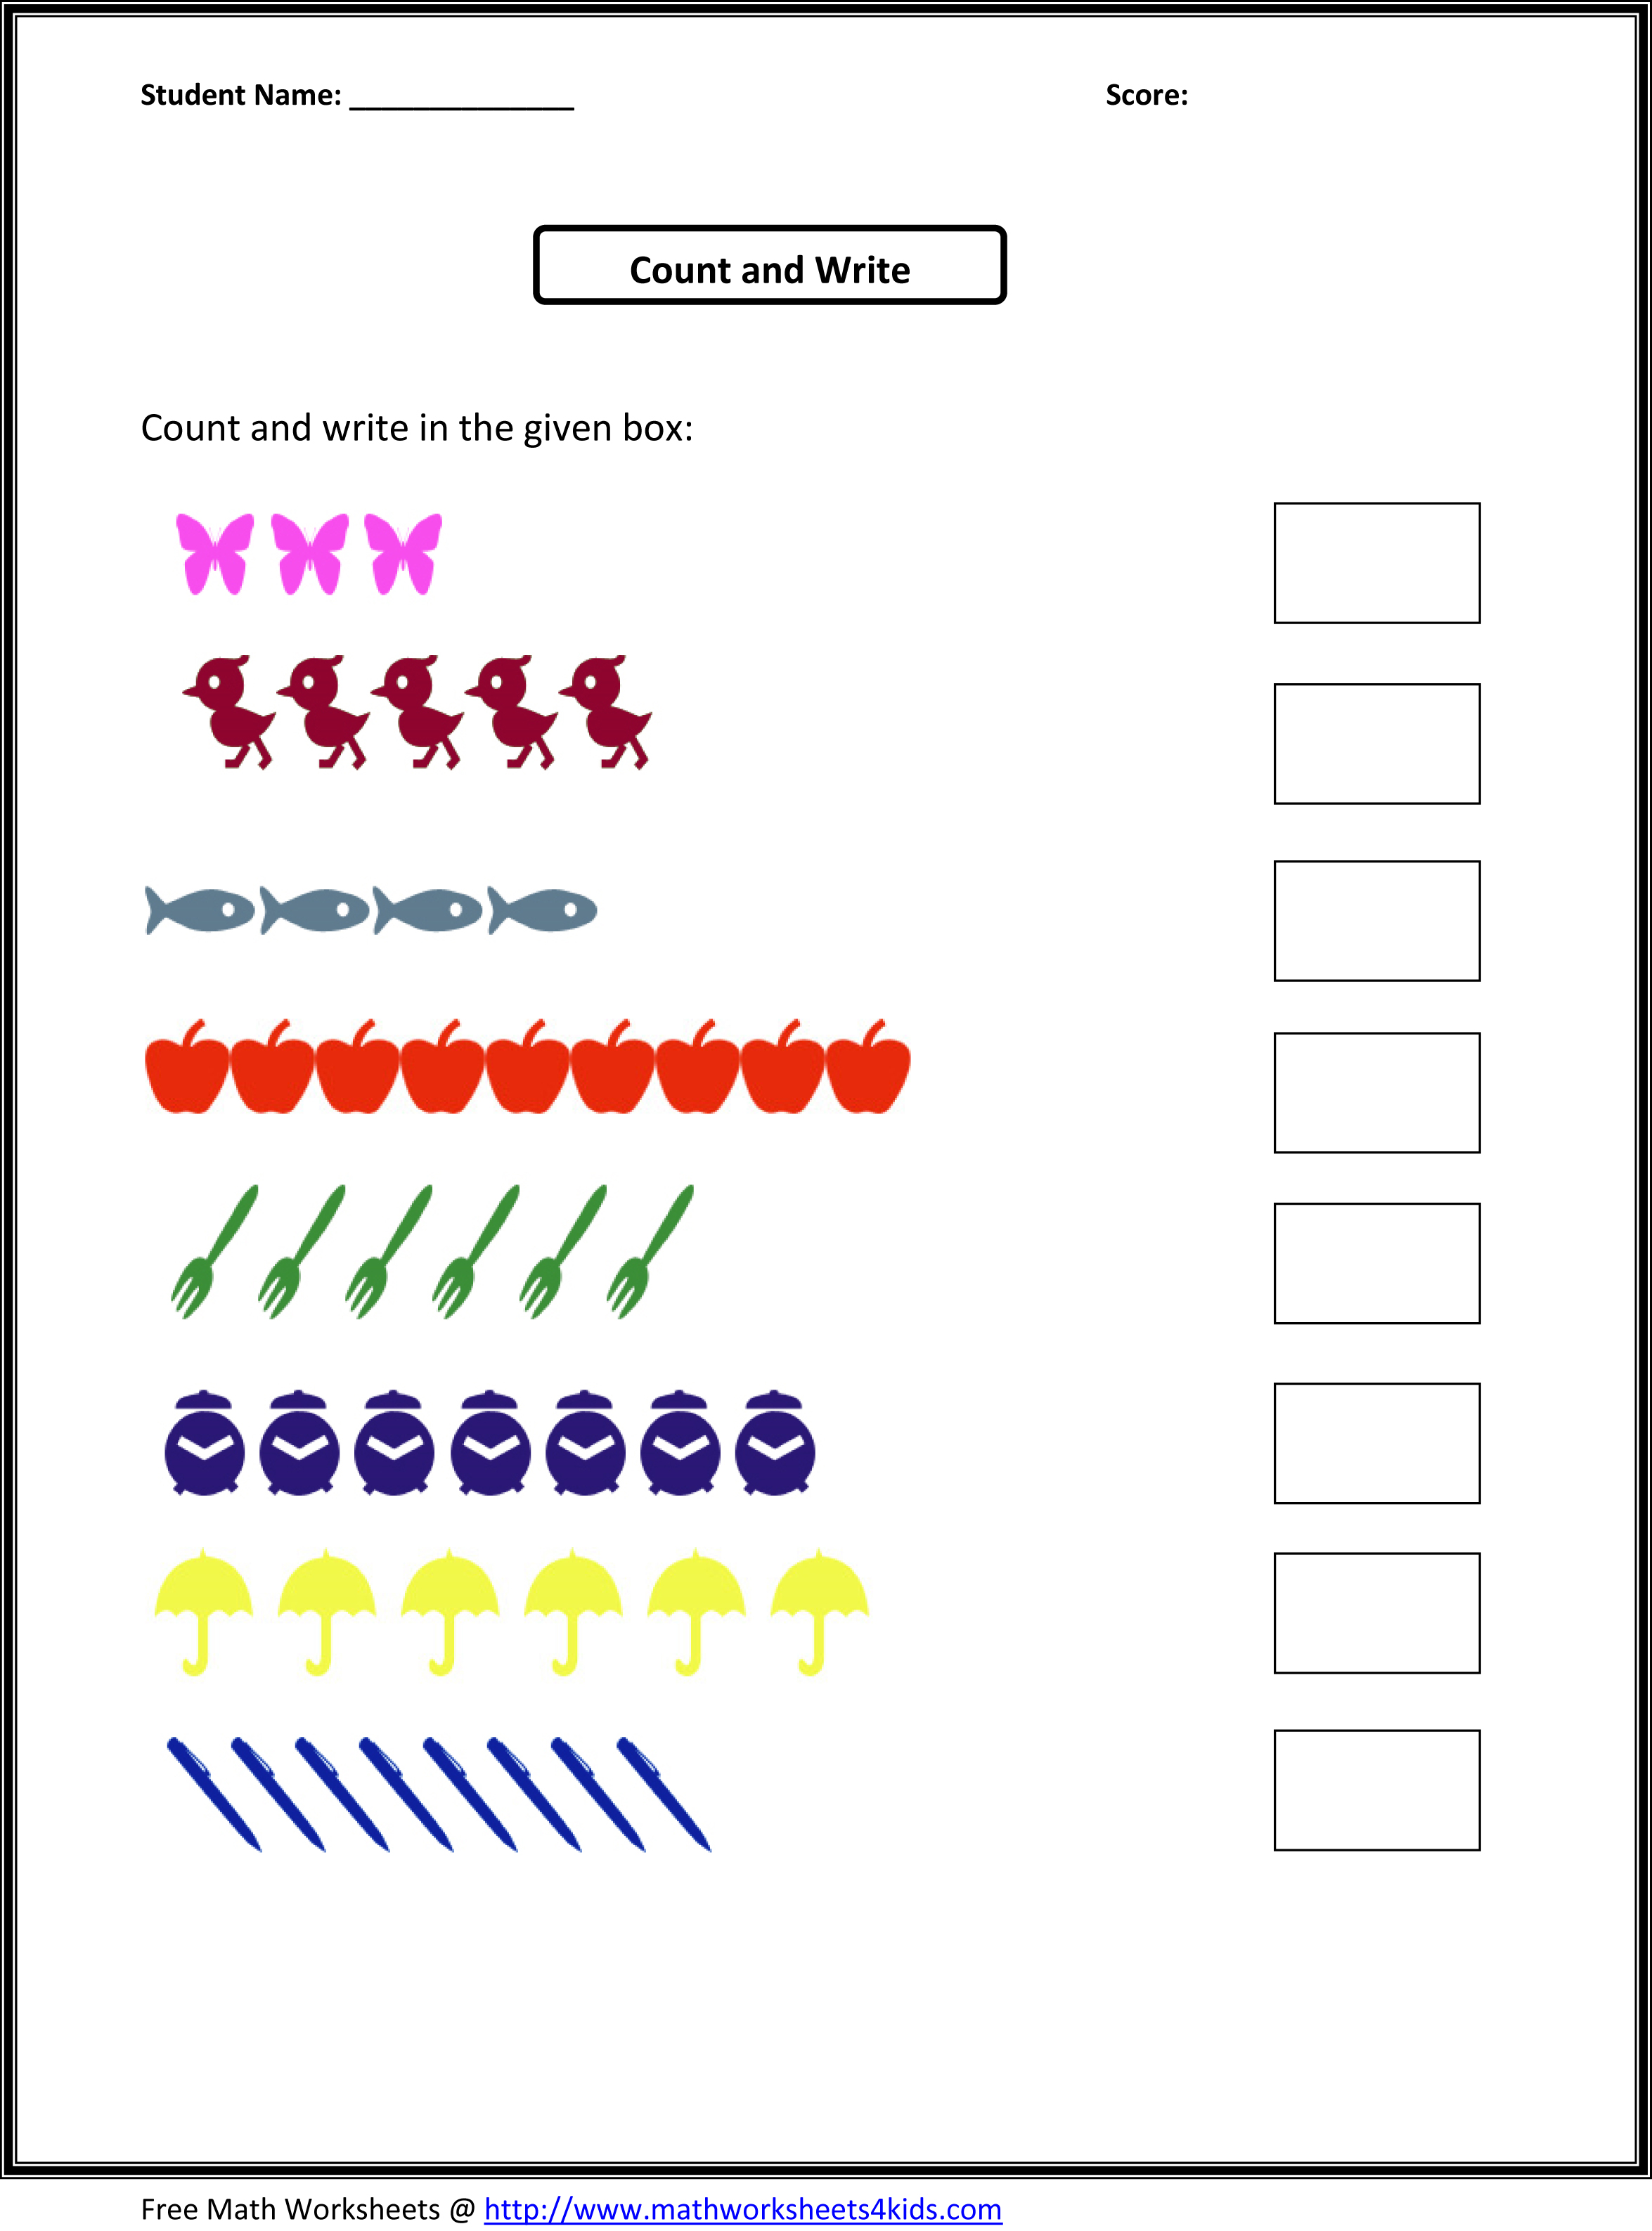 counting-worksheets-kindergarten-kindergarten